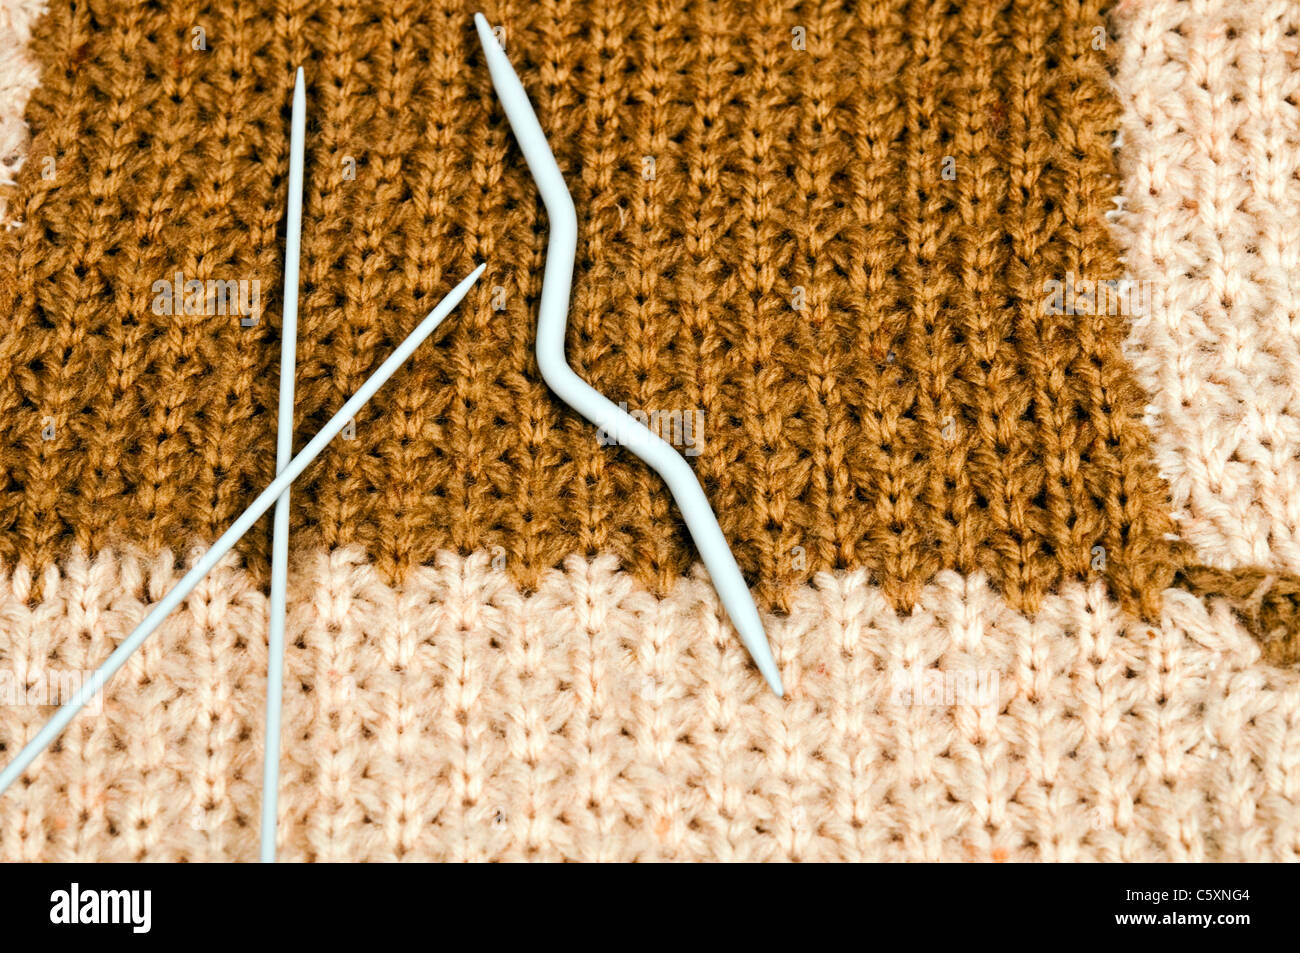 Gruppo crochet sul materiale di lana Foto Stock